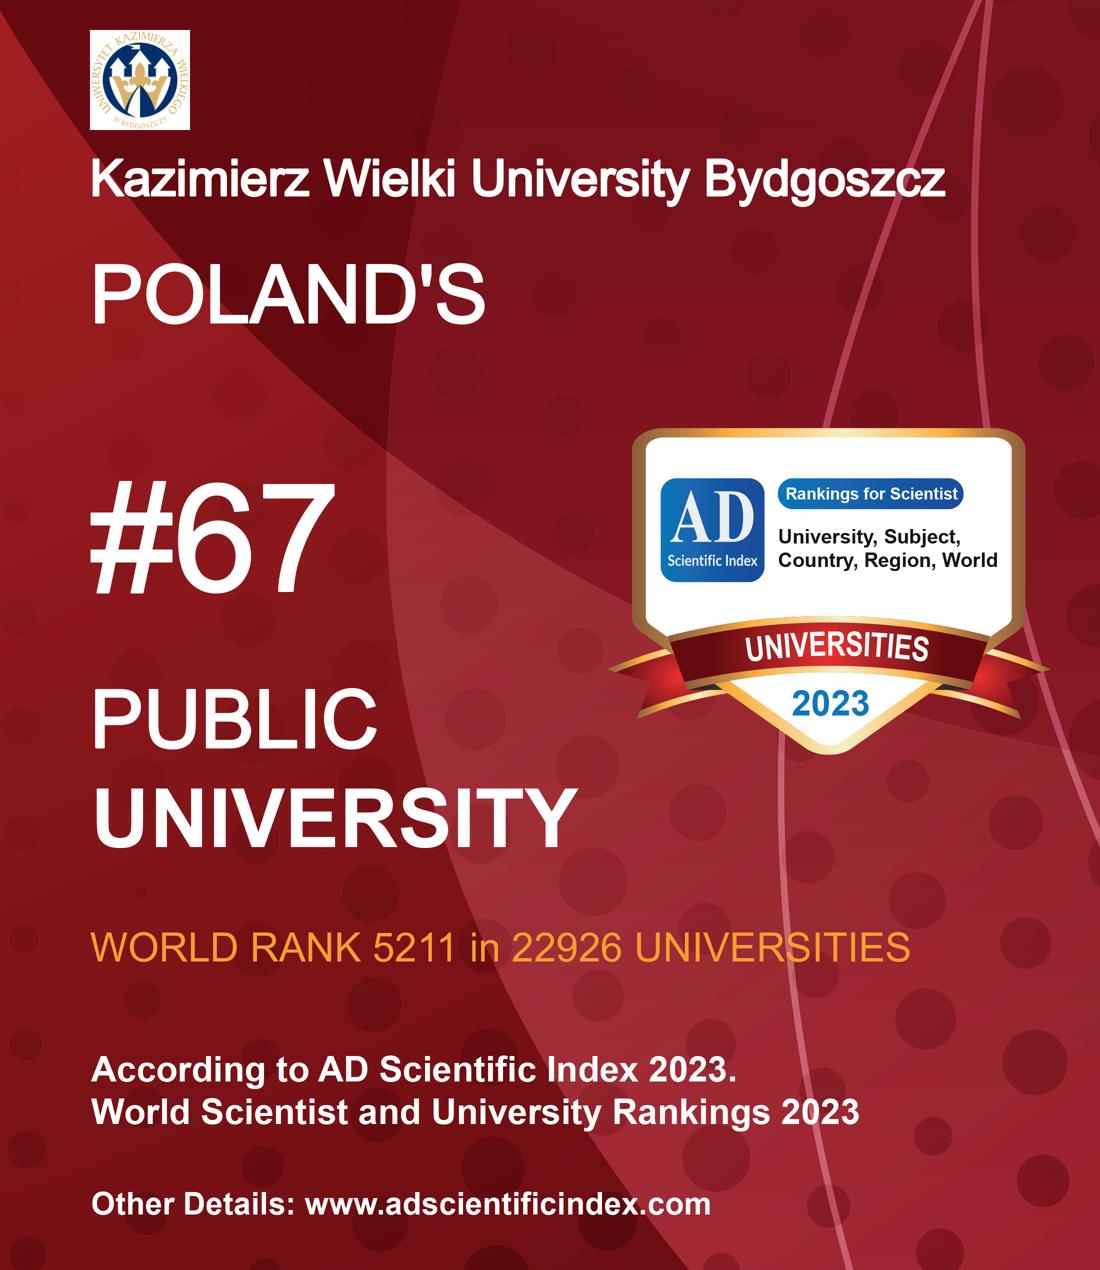 Kazimierz Wielki University Bydgoszcz